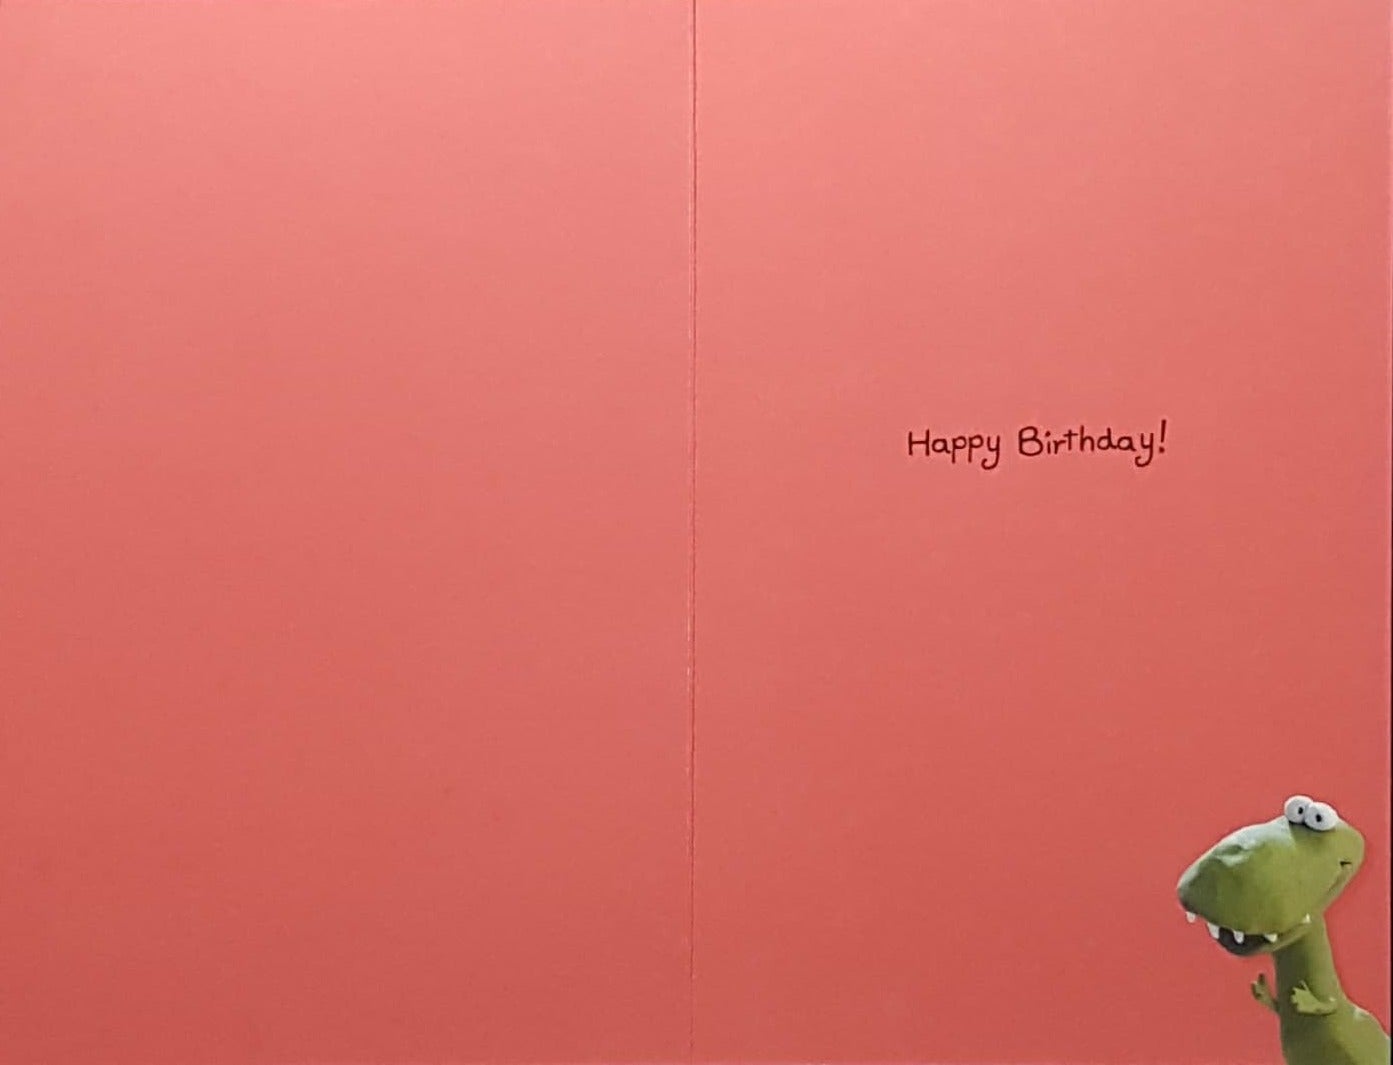 Birthday Card - Humour / 'I Hate Arm Day!' & A Green Dinosaur